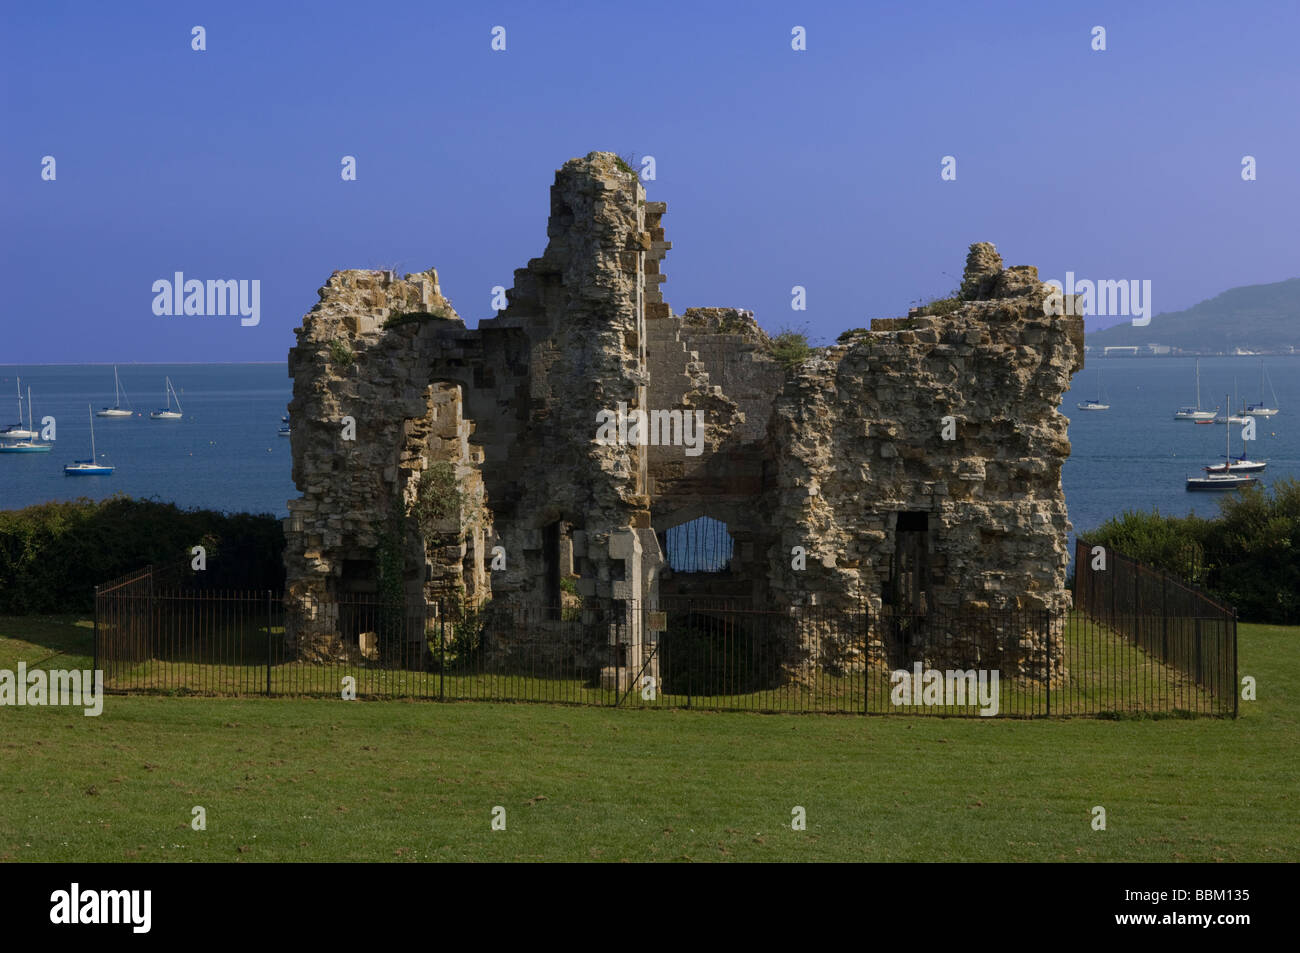 The ruins of Sandsfoot Castle overlooking Portland Harbour in Dorset, England. Stock Photo